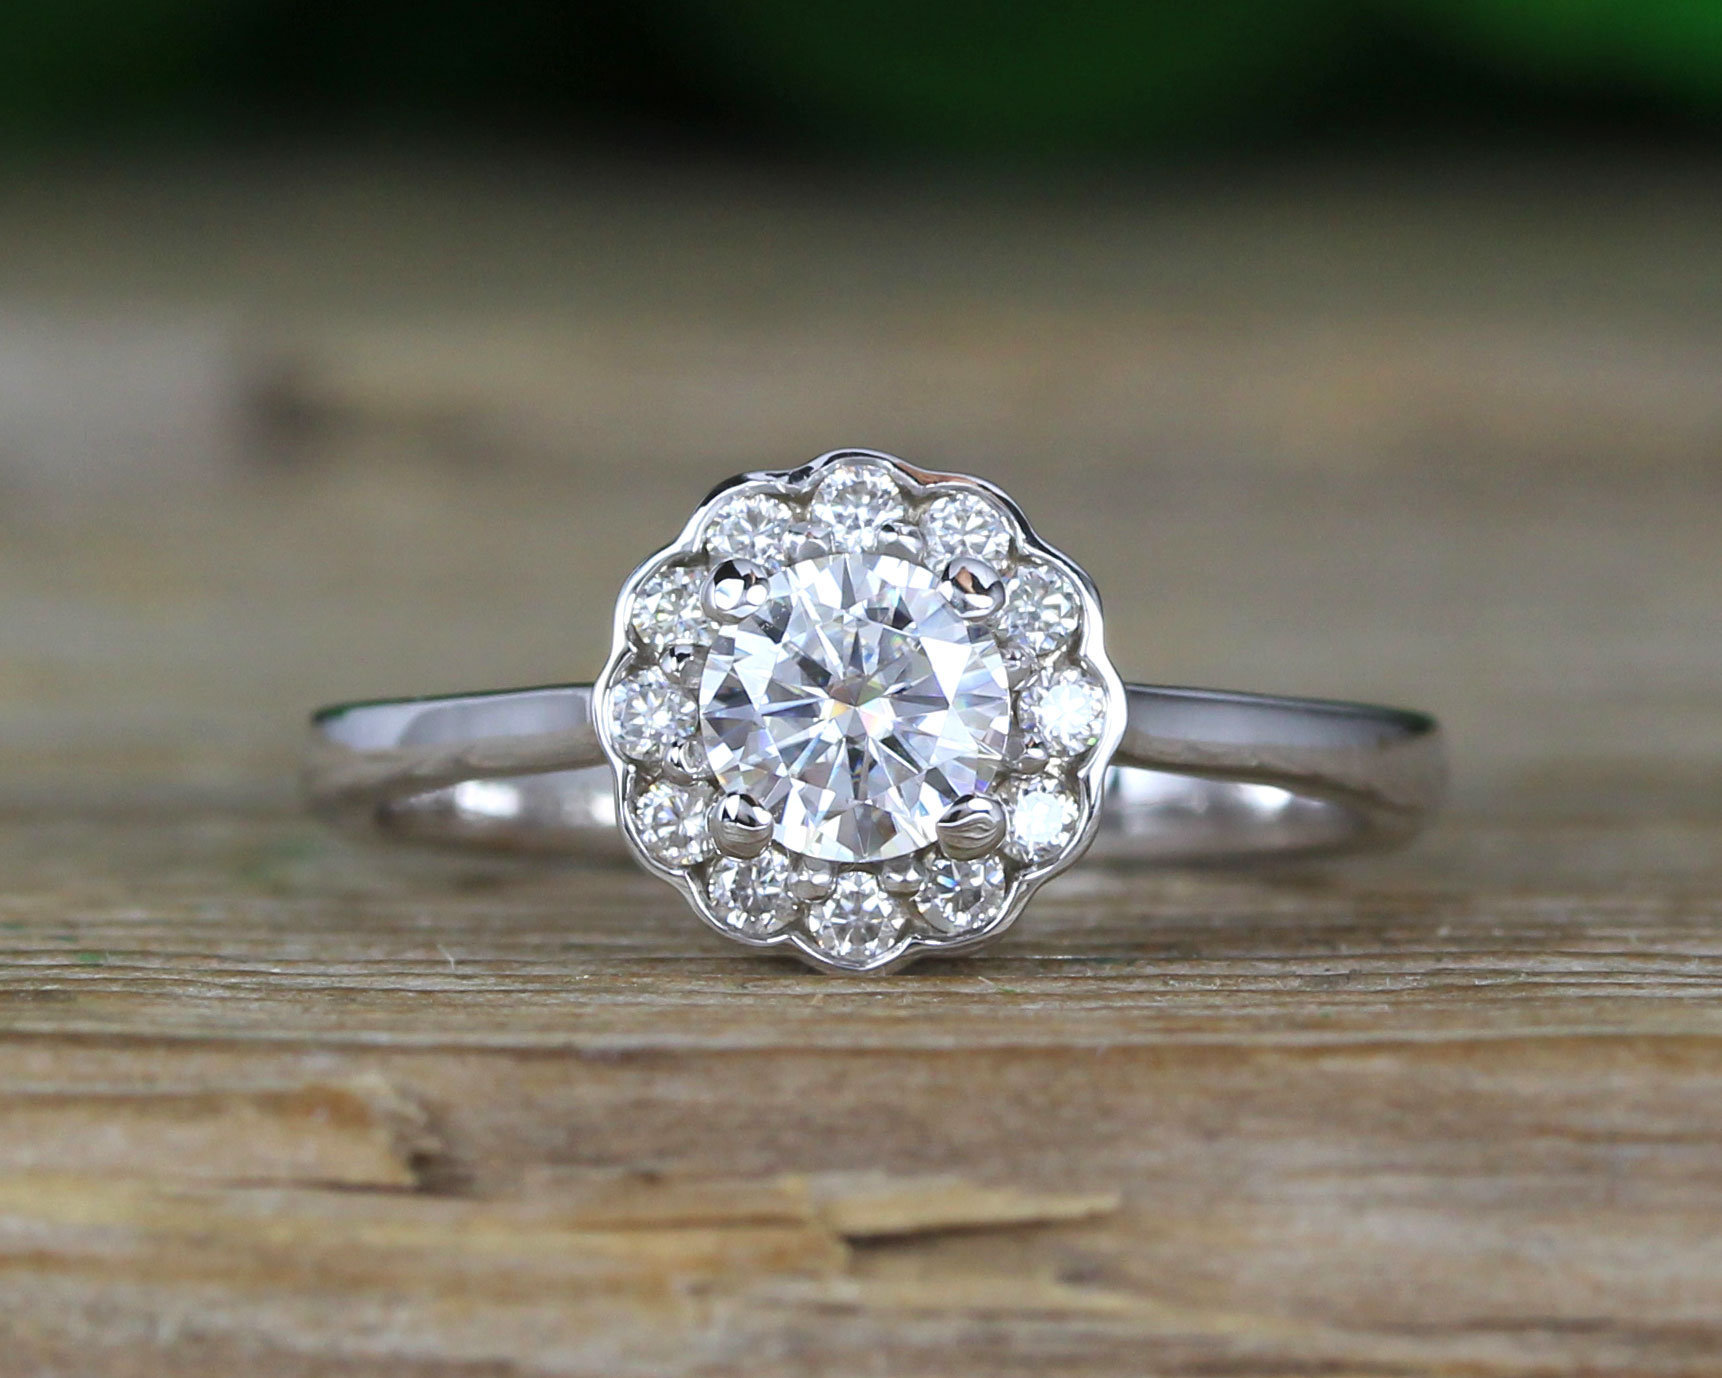 Buy Antique Moissanite Ring Online | Diamondrensu